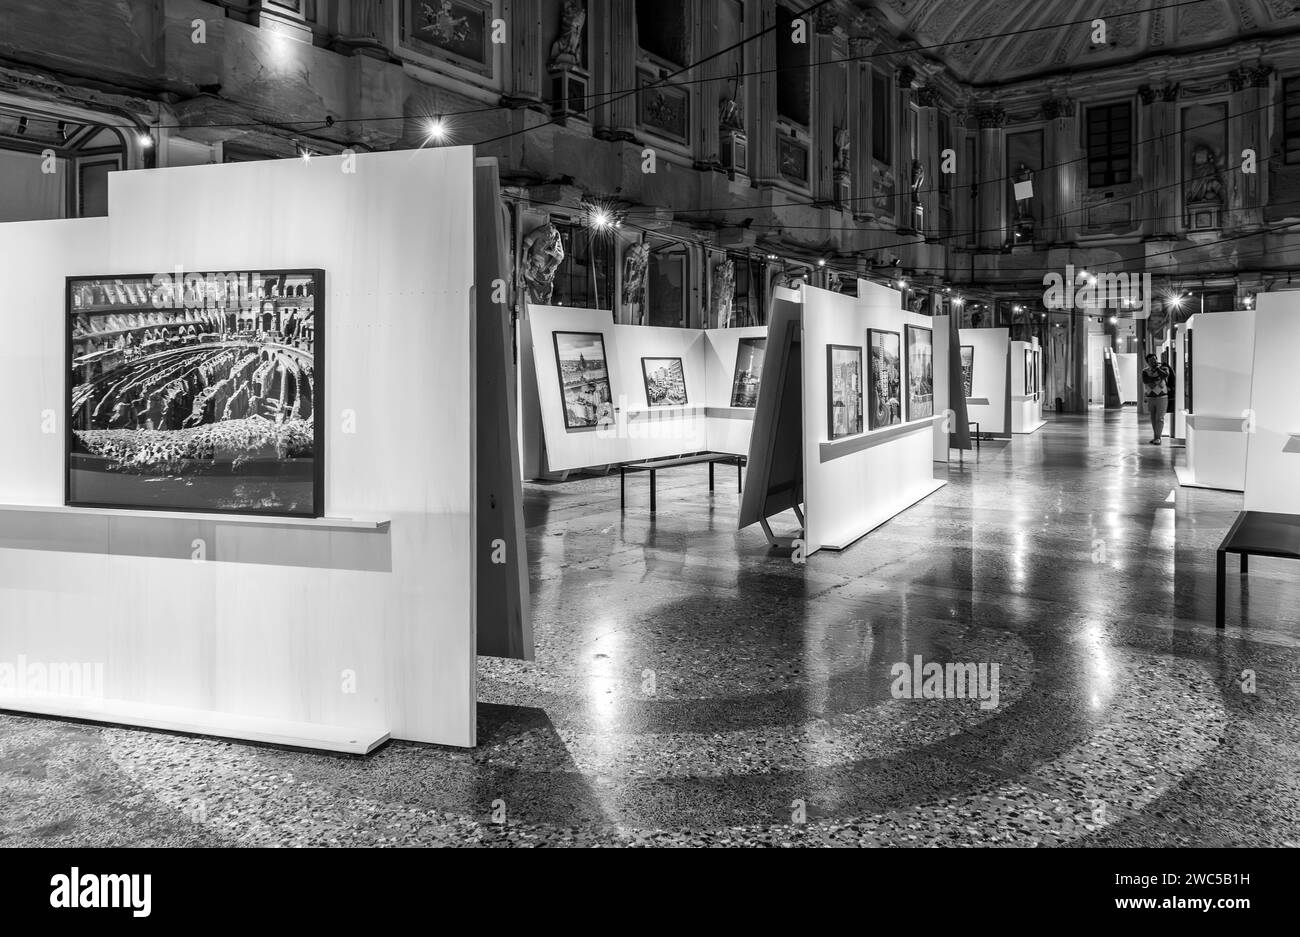 Une exposition du photographe italien Gabriele Basilico (1944 - 2013) - (paysages urbains contemporains) - au Palazzo Reale à Milan, Italie Banque D'Images